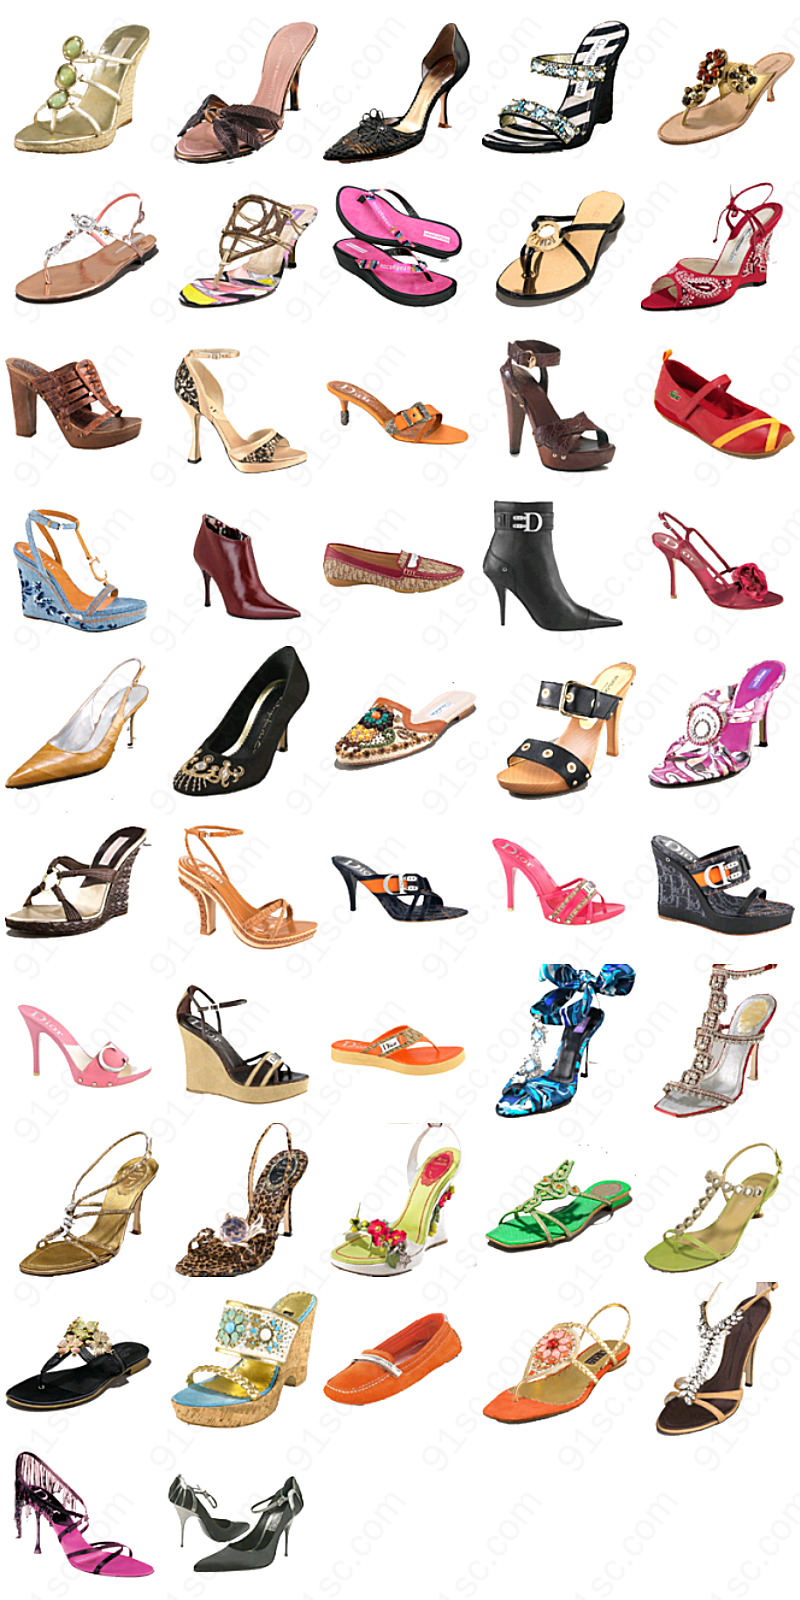 时尚女性鞋子生活工具